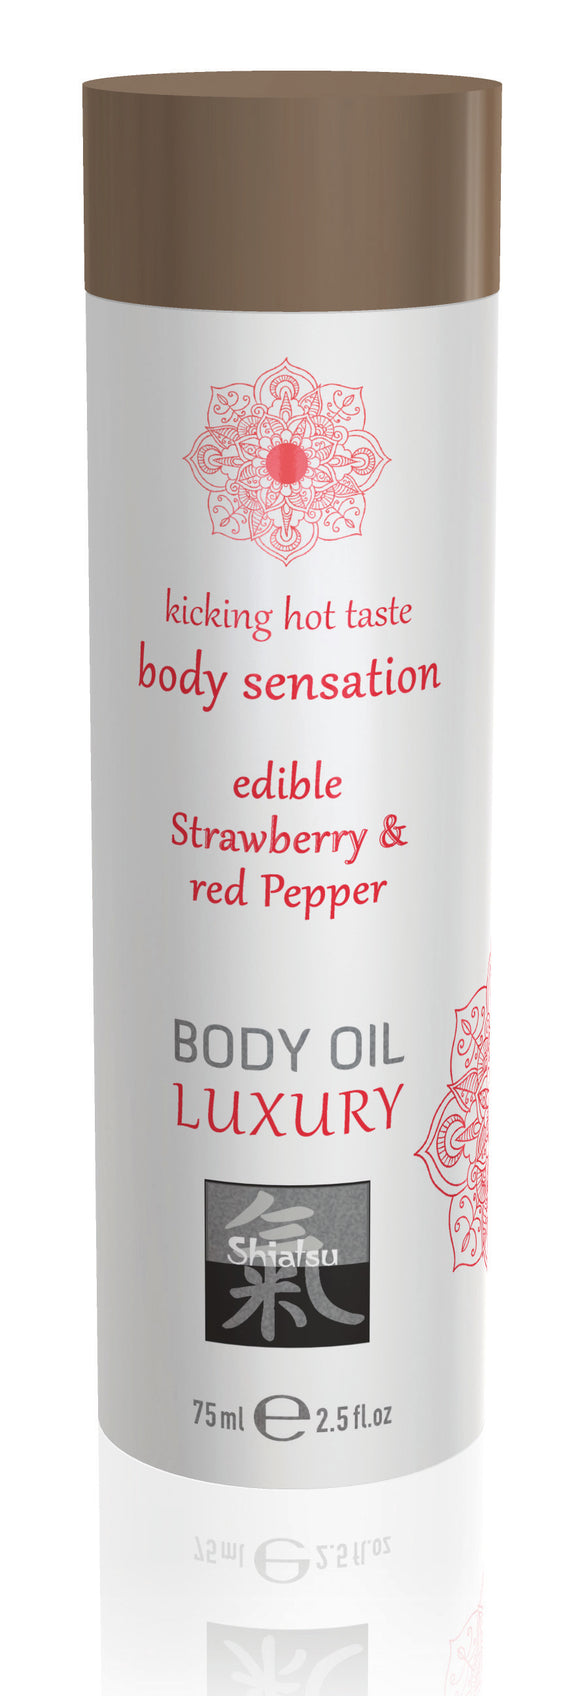 Shiatsu Luxury Body Oil Edible Strawberry and Red Pepper